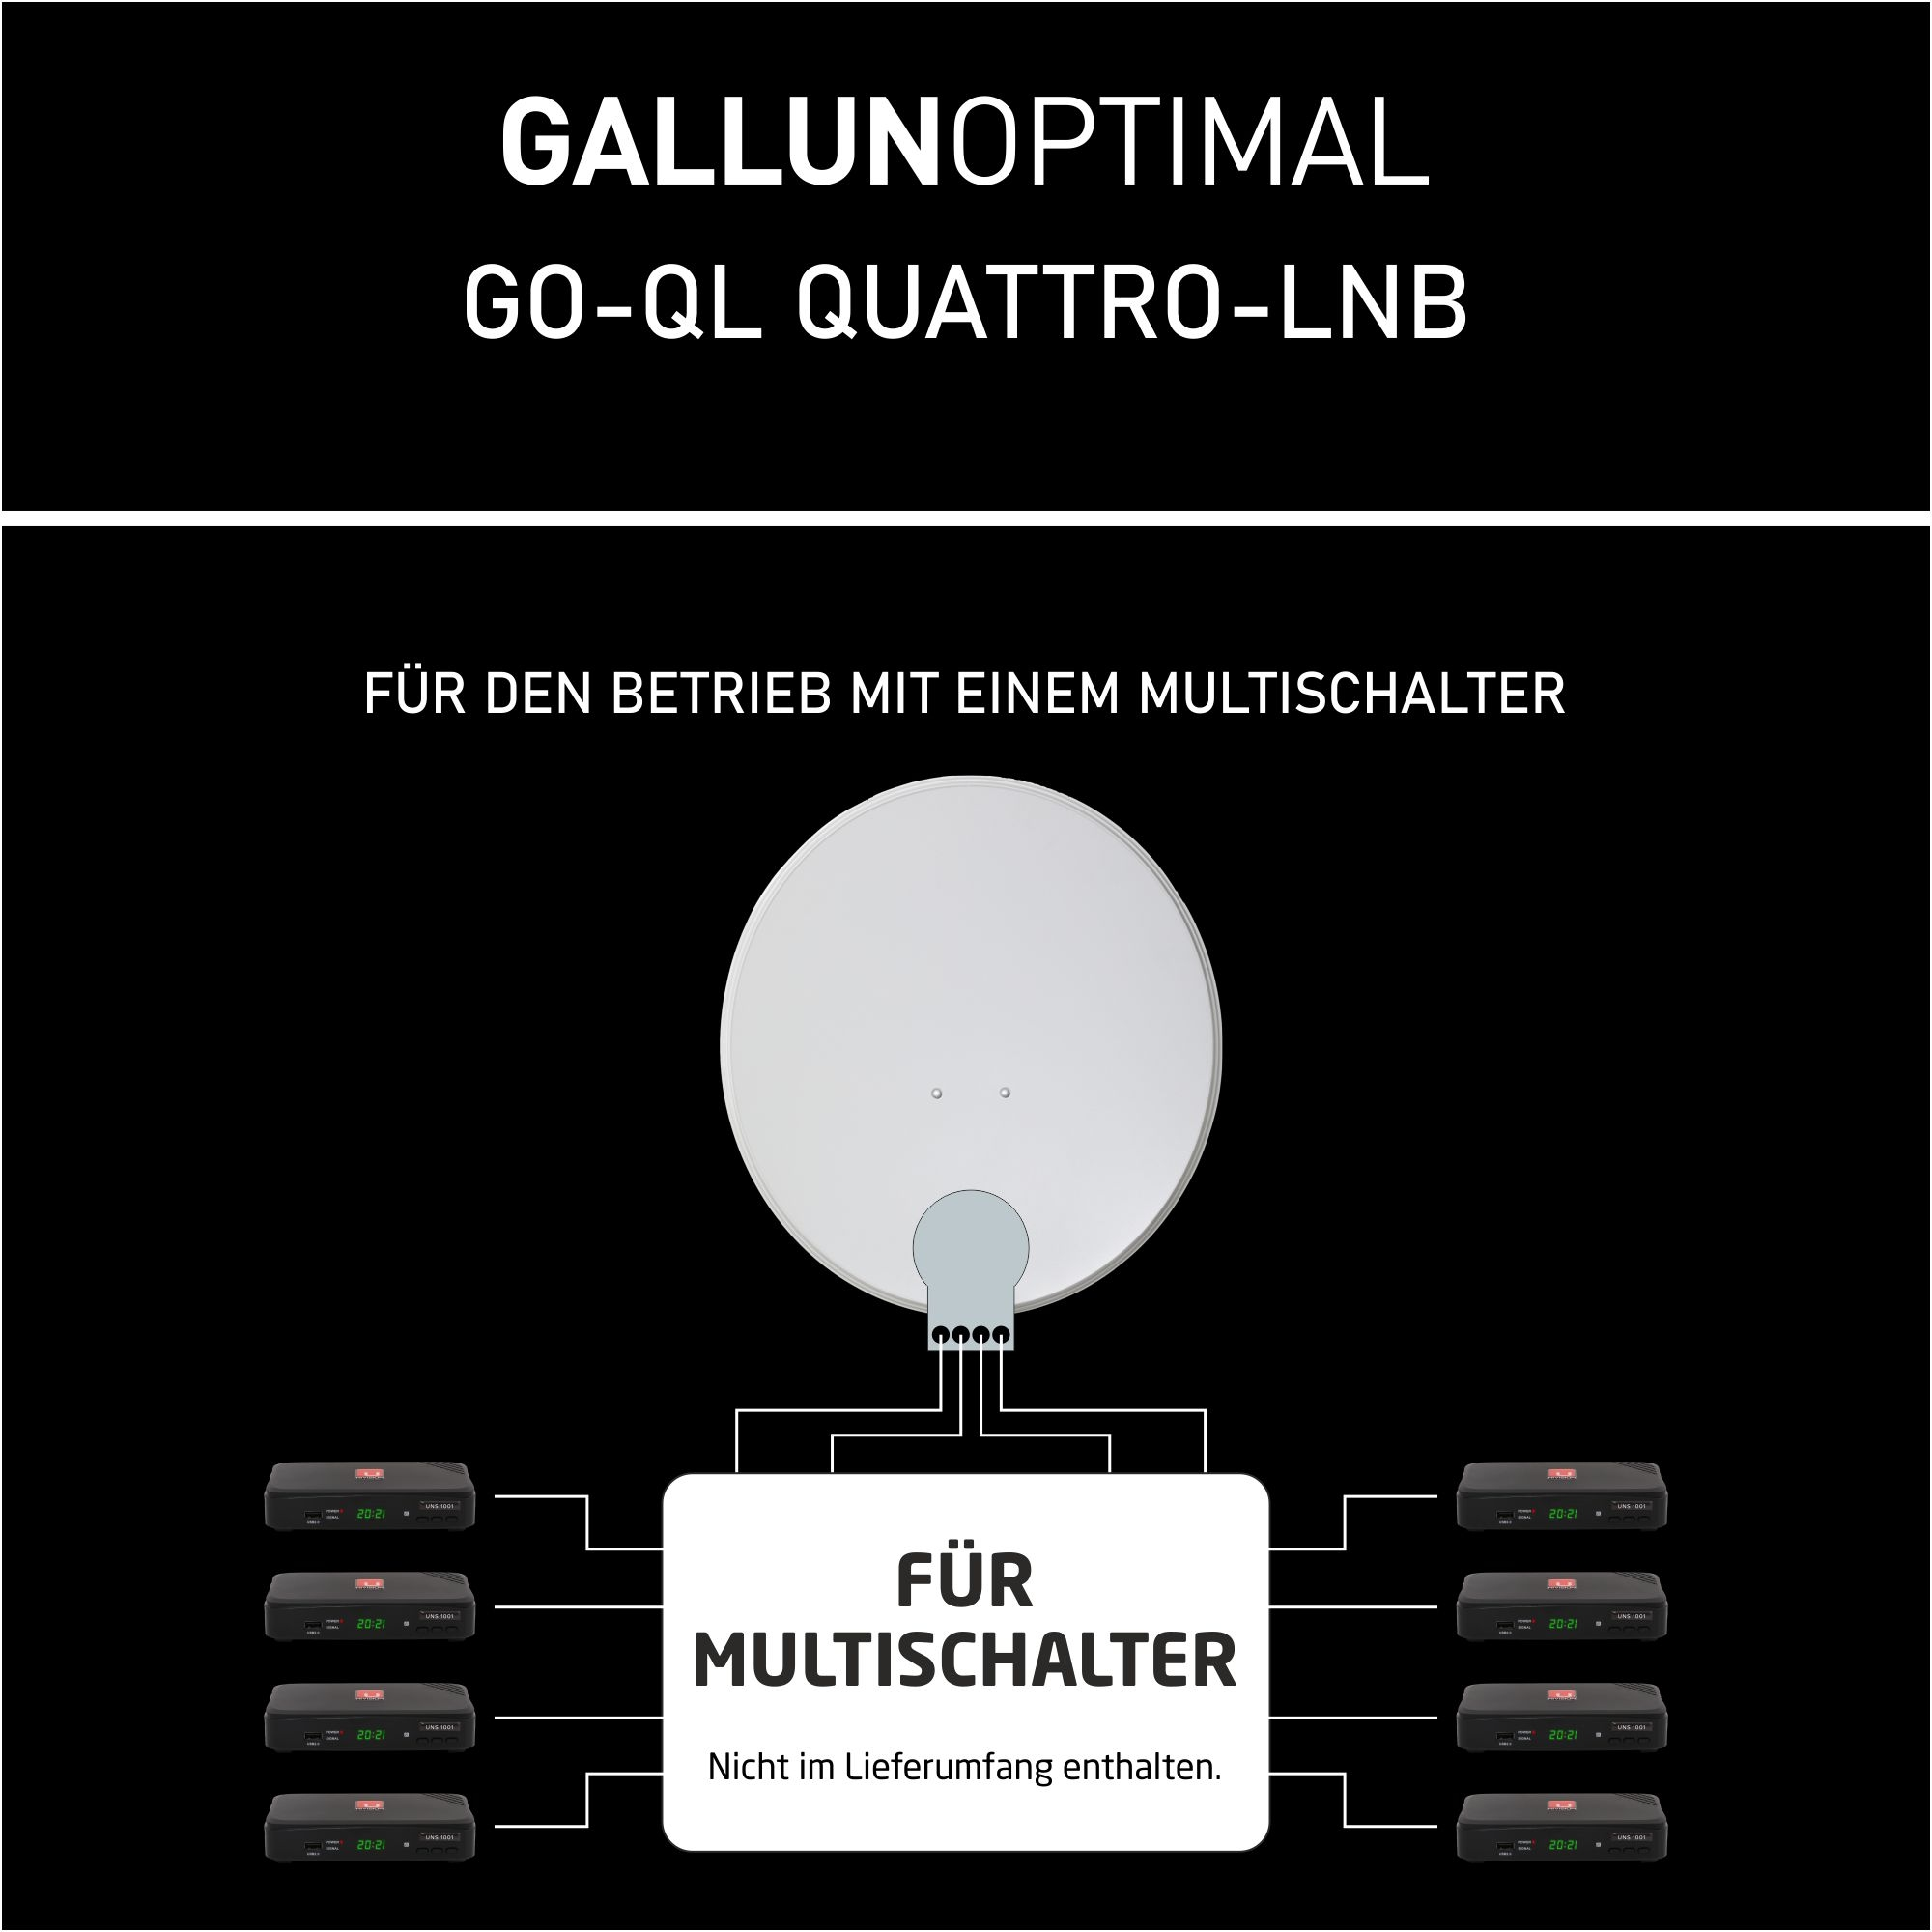 Quattro LNB Multischalter 40 GALLUNOPTIMAL mm GO-QL für